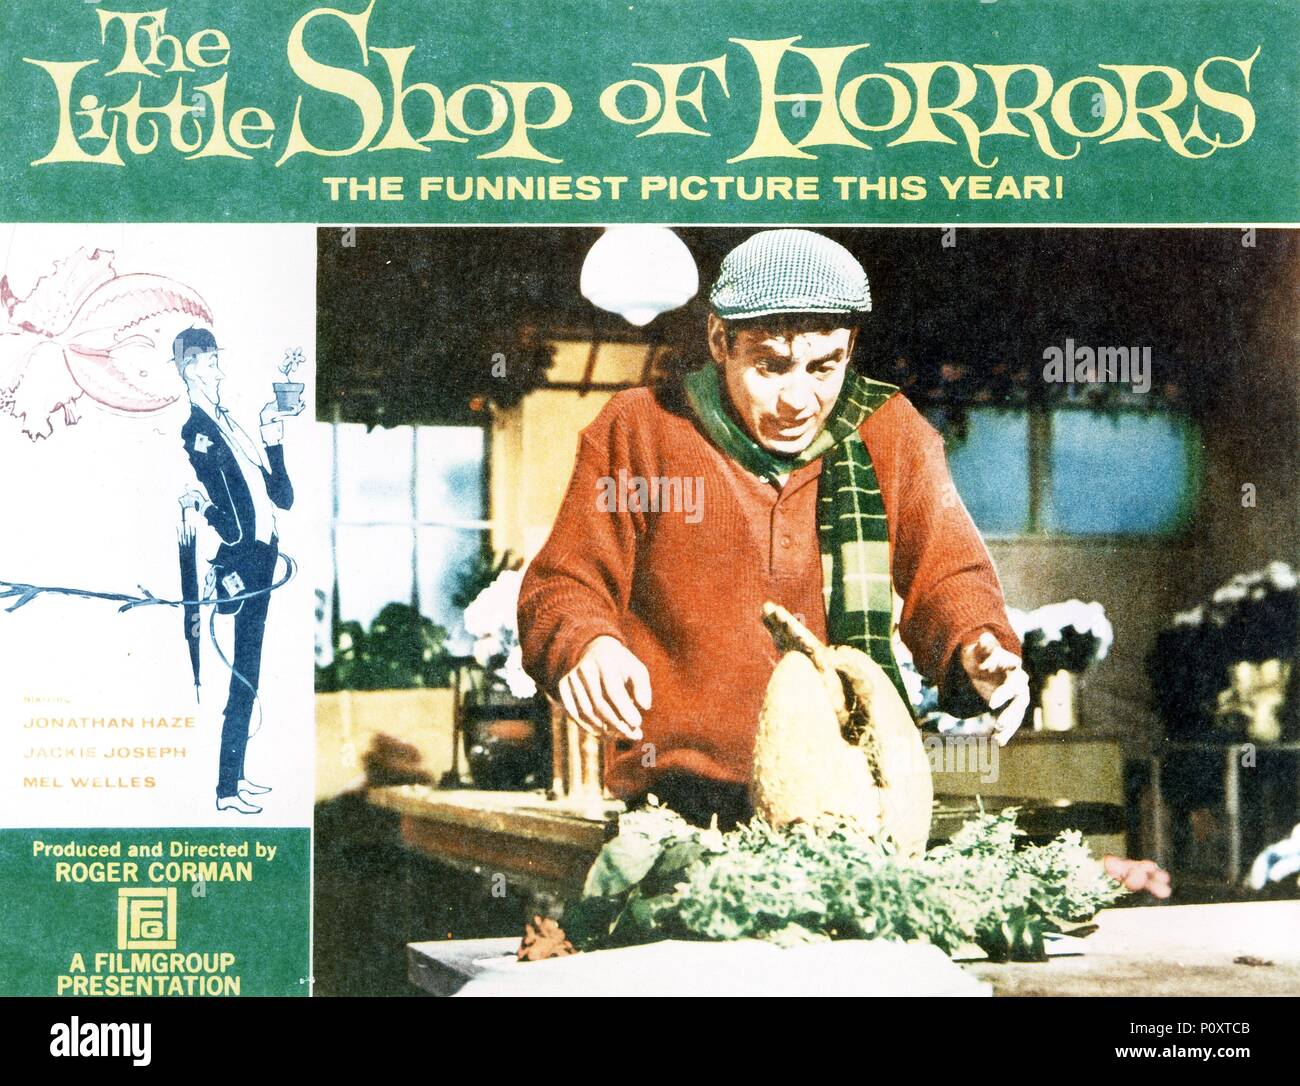 Pellicola originale titolo: The Little Shop Of Horrors. Titolo inglese: The Little Shop Of Horrors. Regista: ROGER CORMAN. Anno: 1960. Credito: 70M FILMGROUP / Album Foto Stock